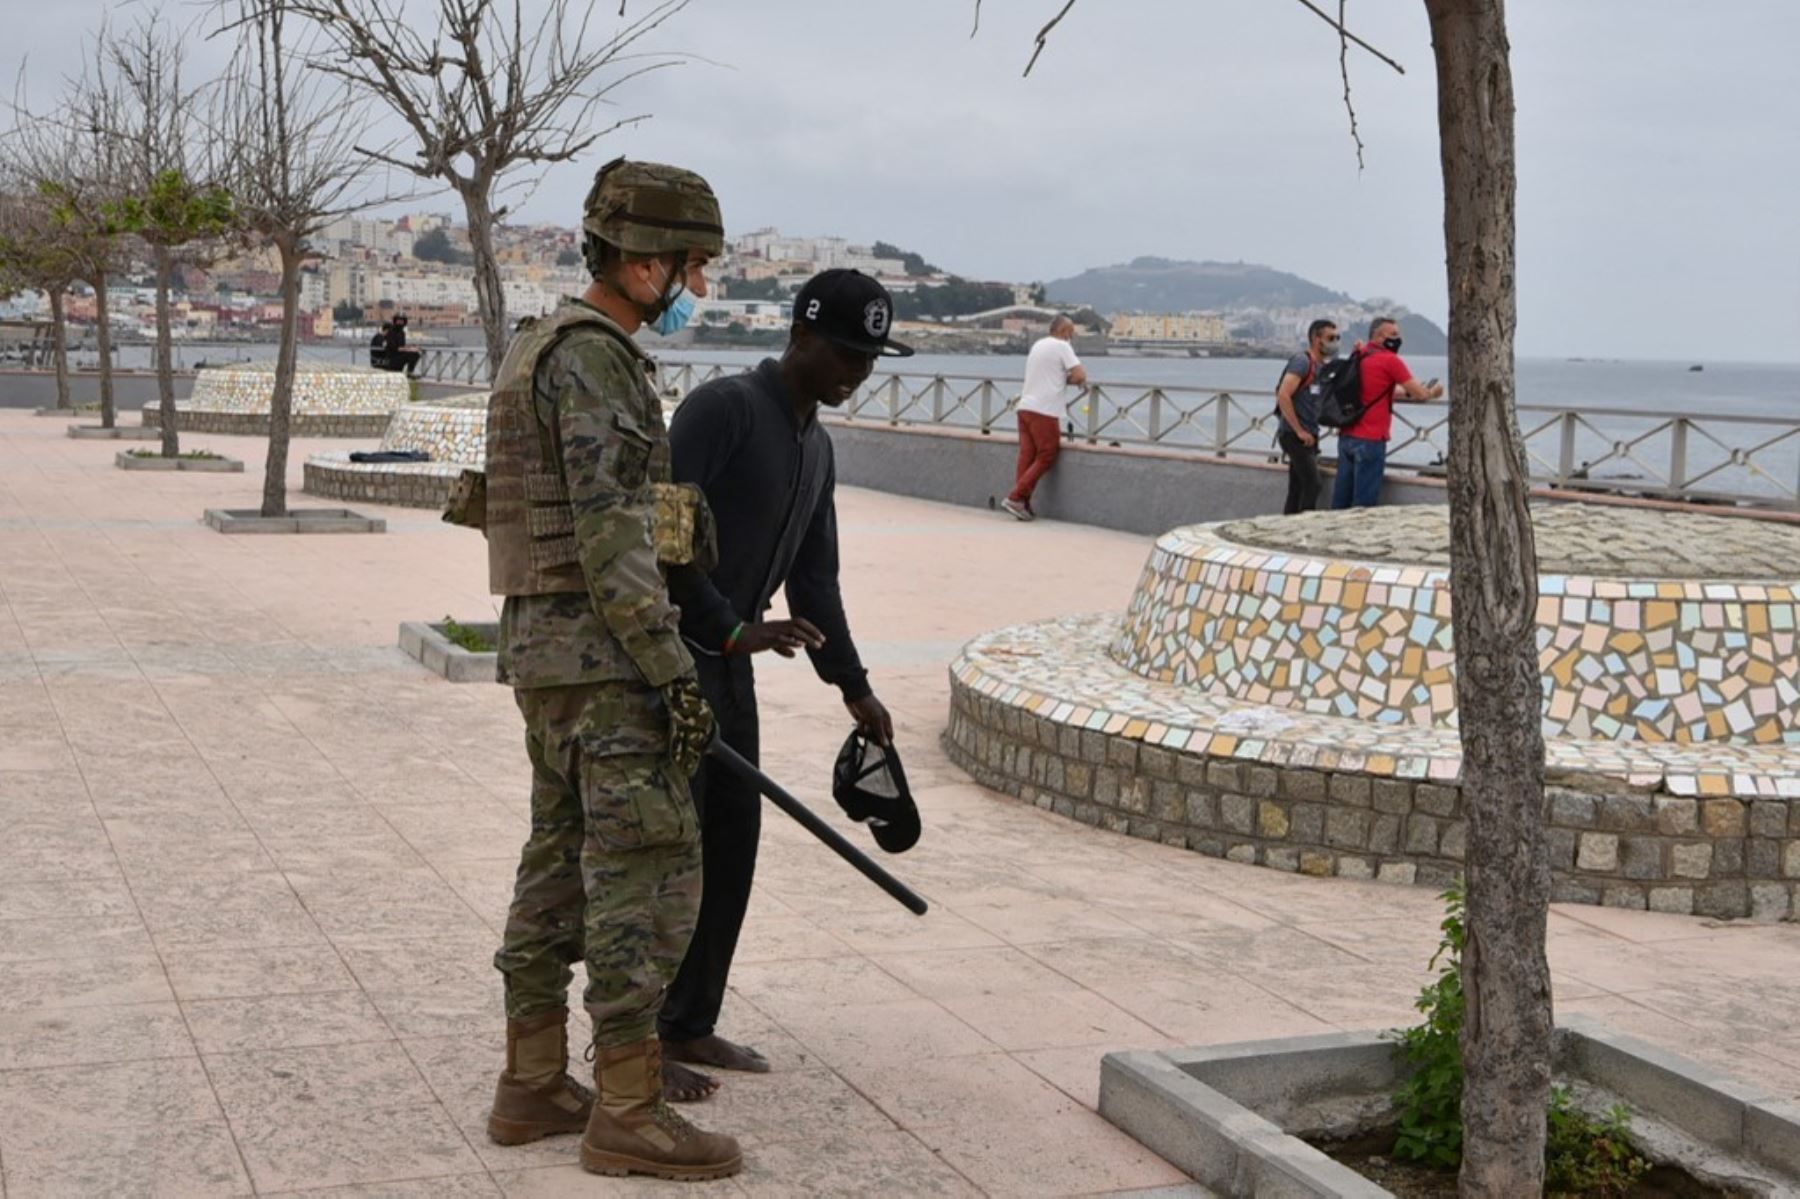 Un soldado español asiste a un migrante que llegó nadando al enclave español de Ceuta, el 18 de mayo de 2021 en Ceuta. - España ha devuelto a Marruecos casi la mitad de los 6.000 migrantes que entraron en su enclave de Ceuta, mientras cientos más intentaban entrar en su otro territorio del norte de África. Foto: AFP